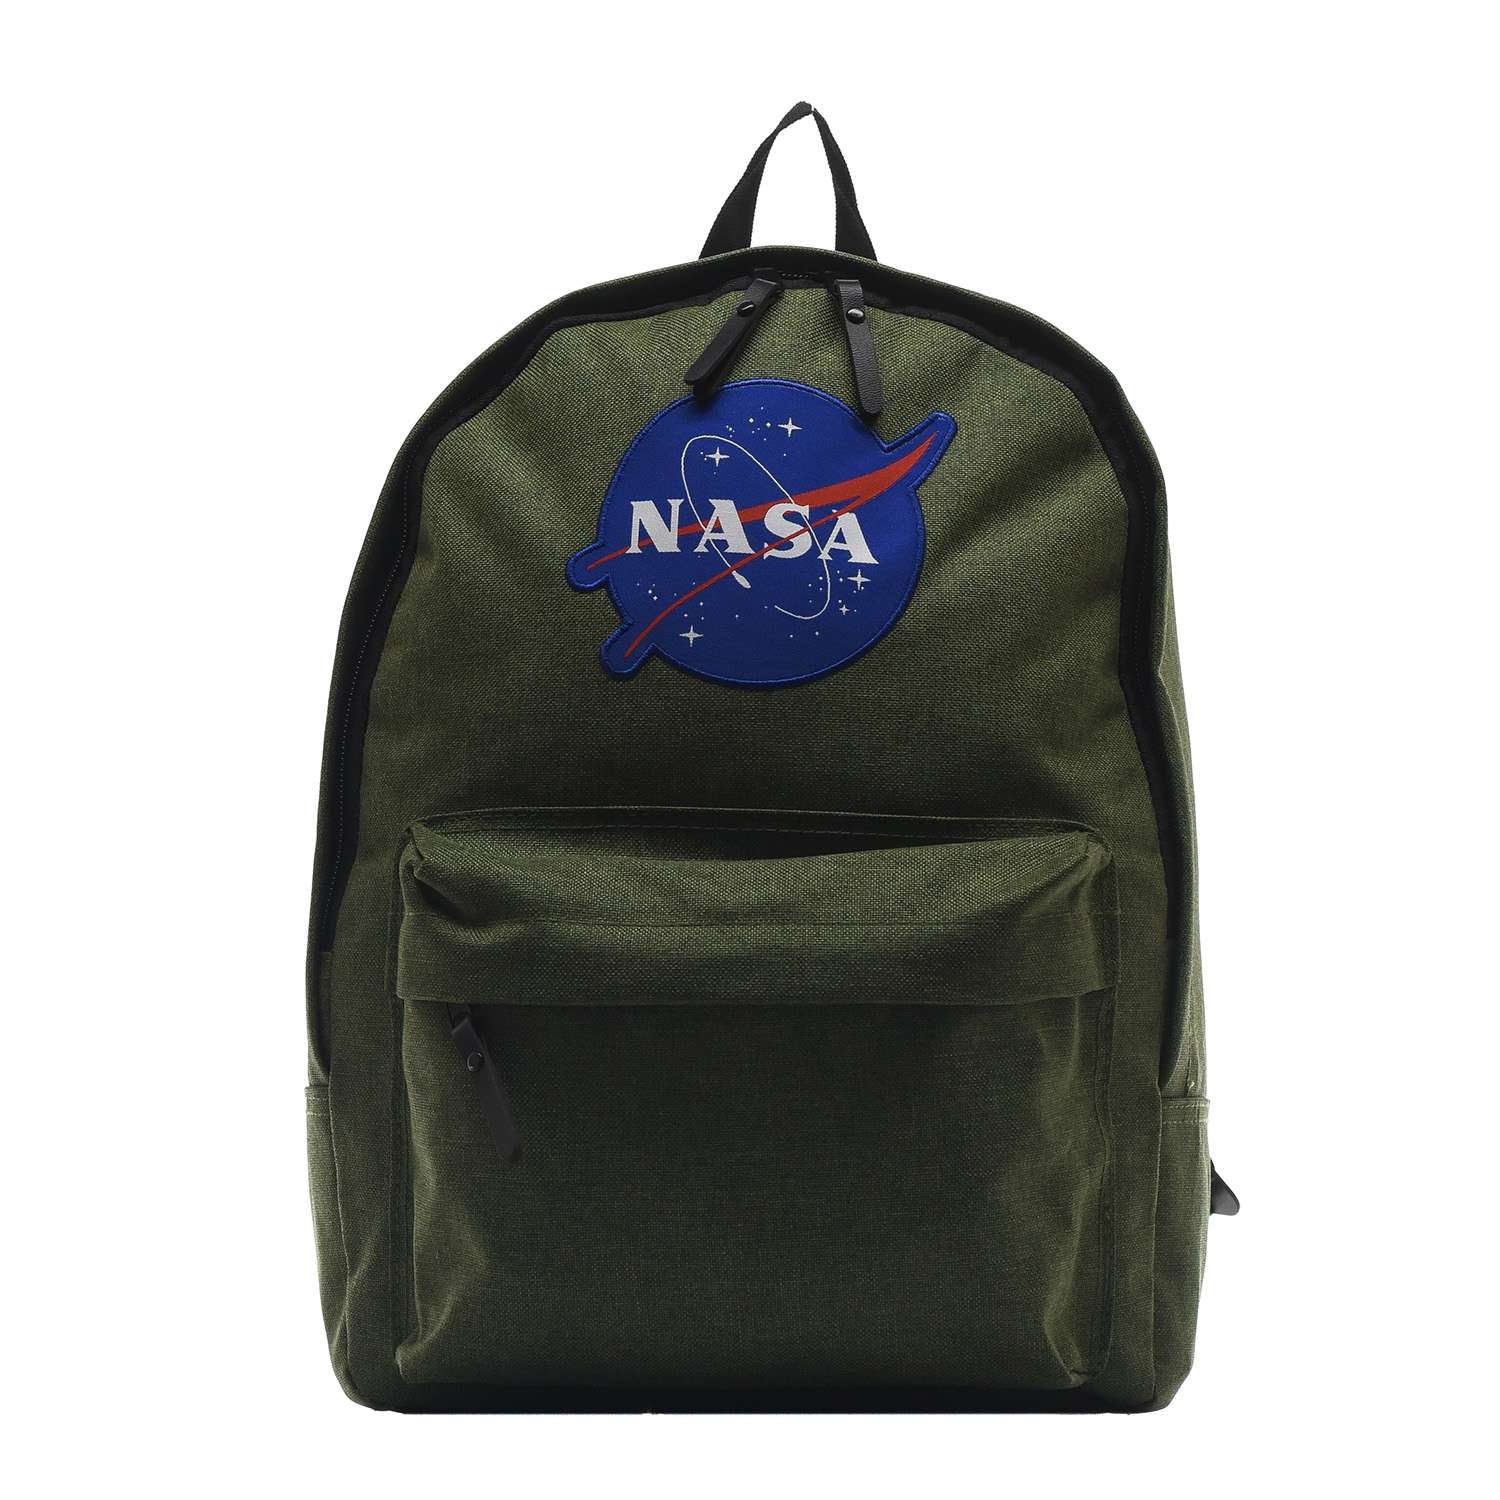 Рюкзак NASA 086109002-OLIVE-17 - фото 1